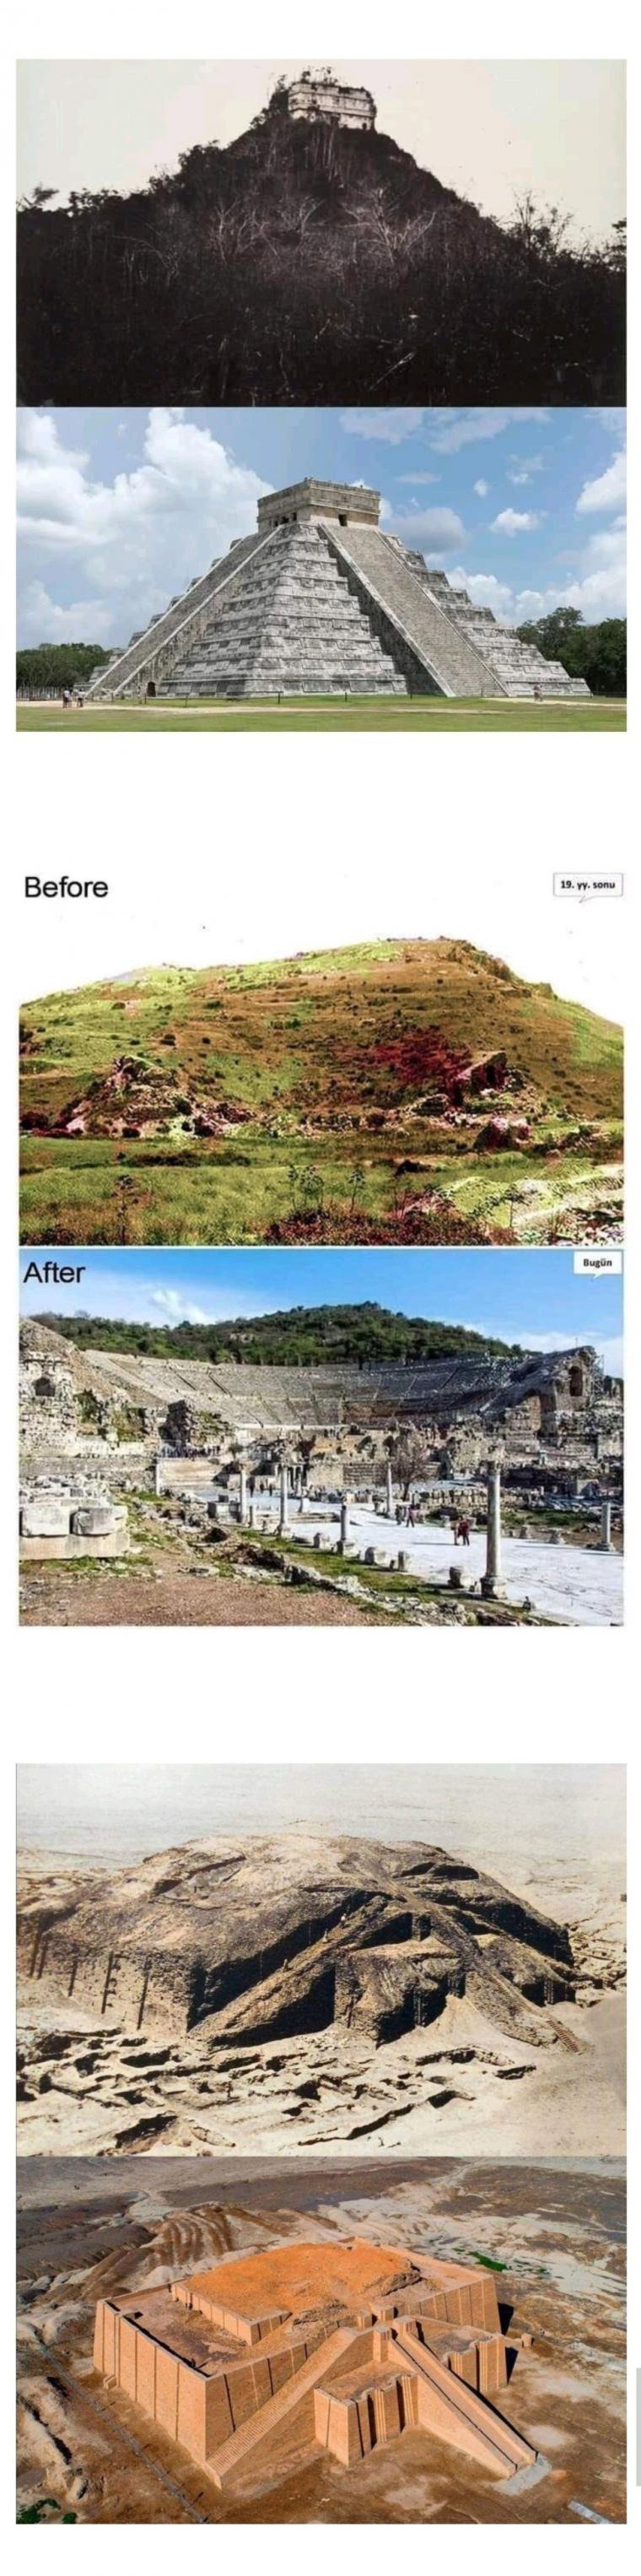 고대유적 발굴 전후